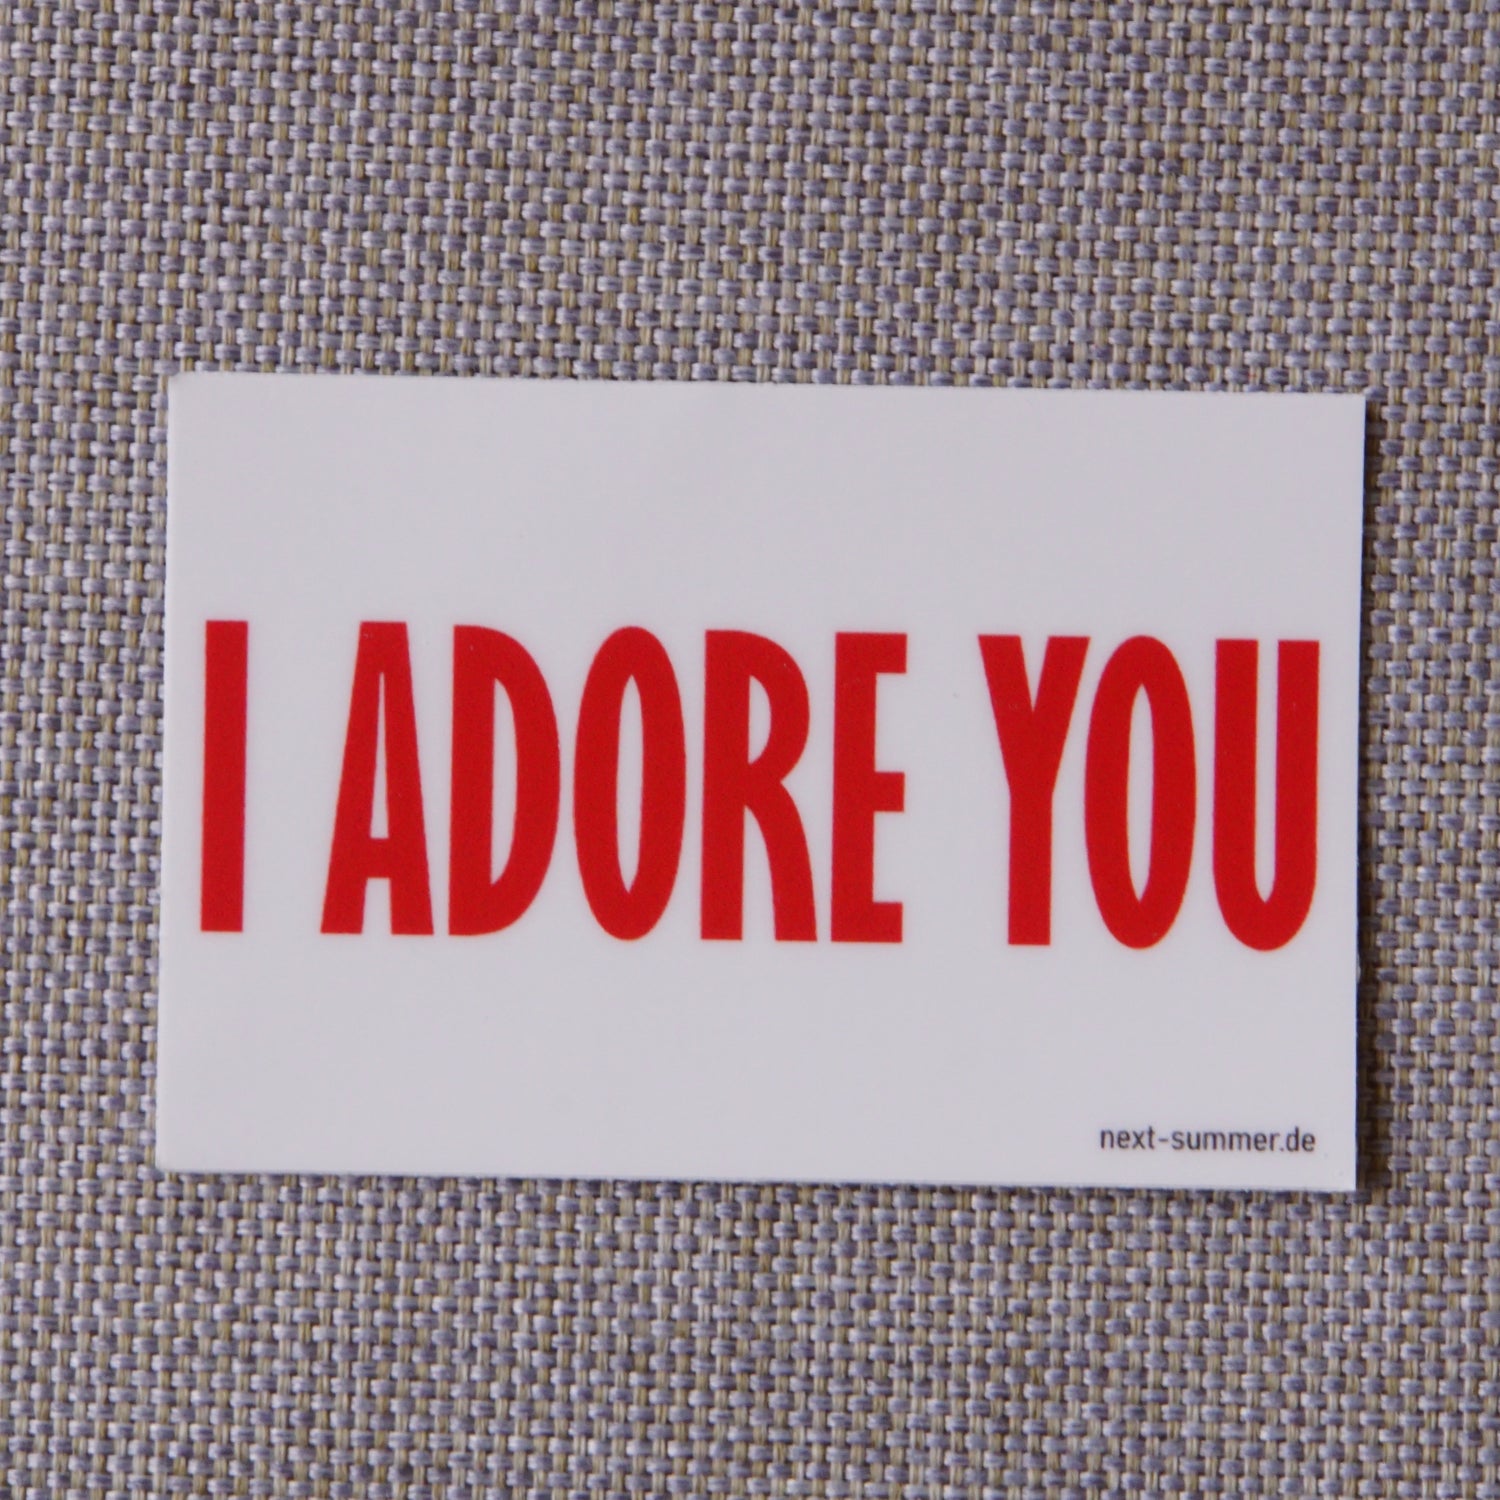 Say it with love. Sticker aus Vinyl mit dem Print "I ADORE YOU". Passend zum Unisex T-Shirt.